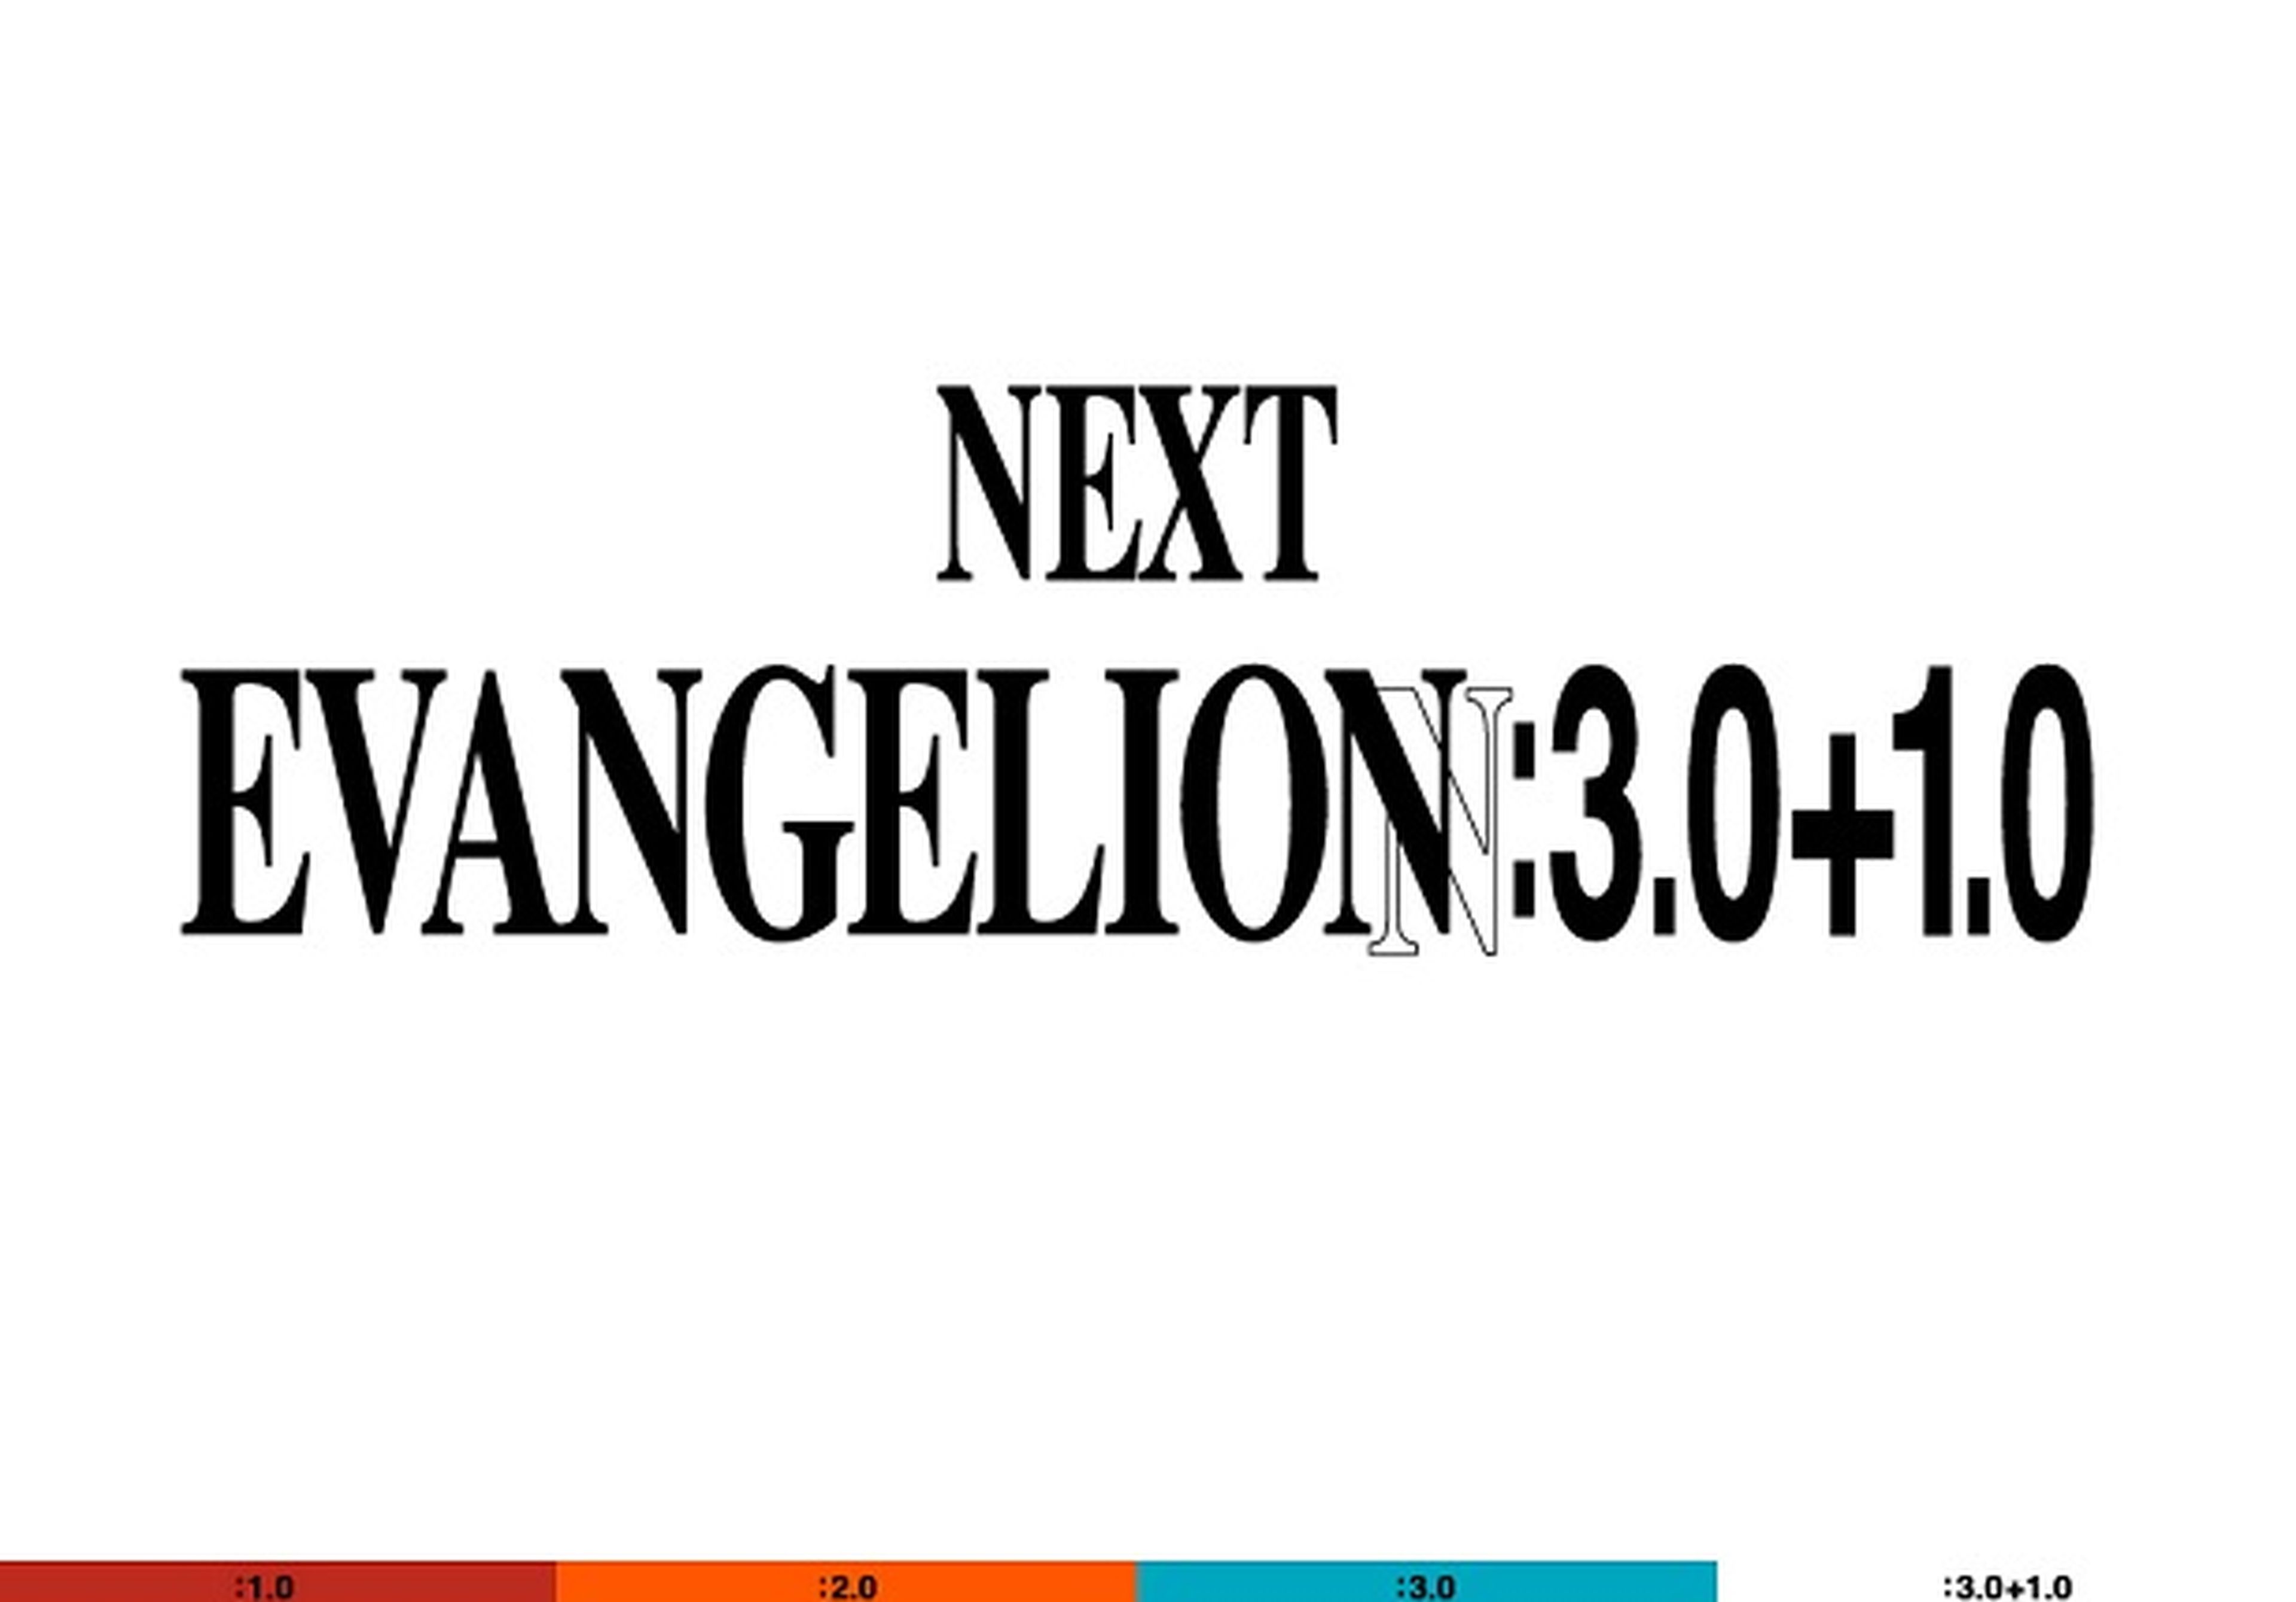 Anunciada la cuarta película de Evangelion